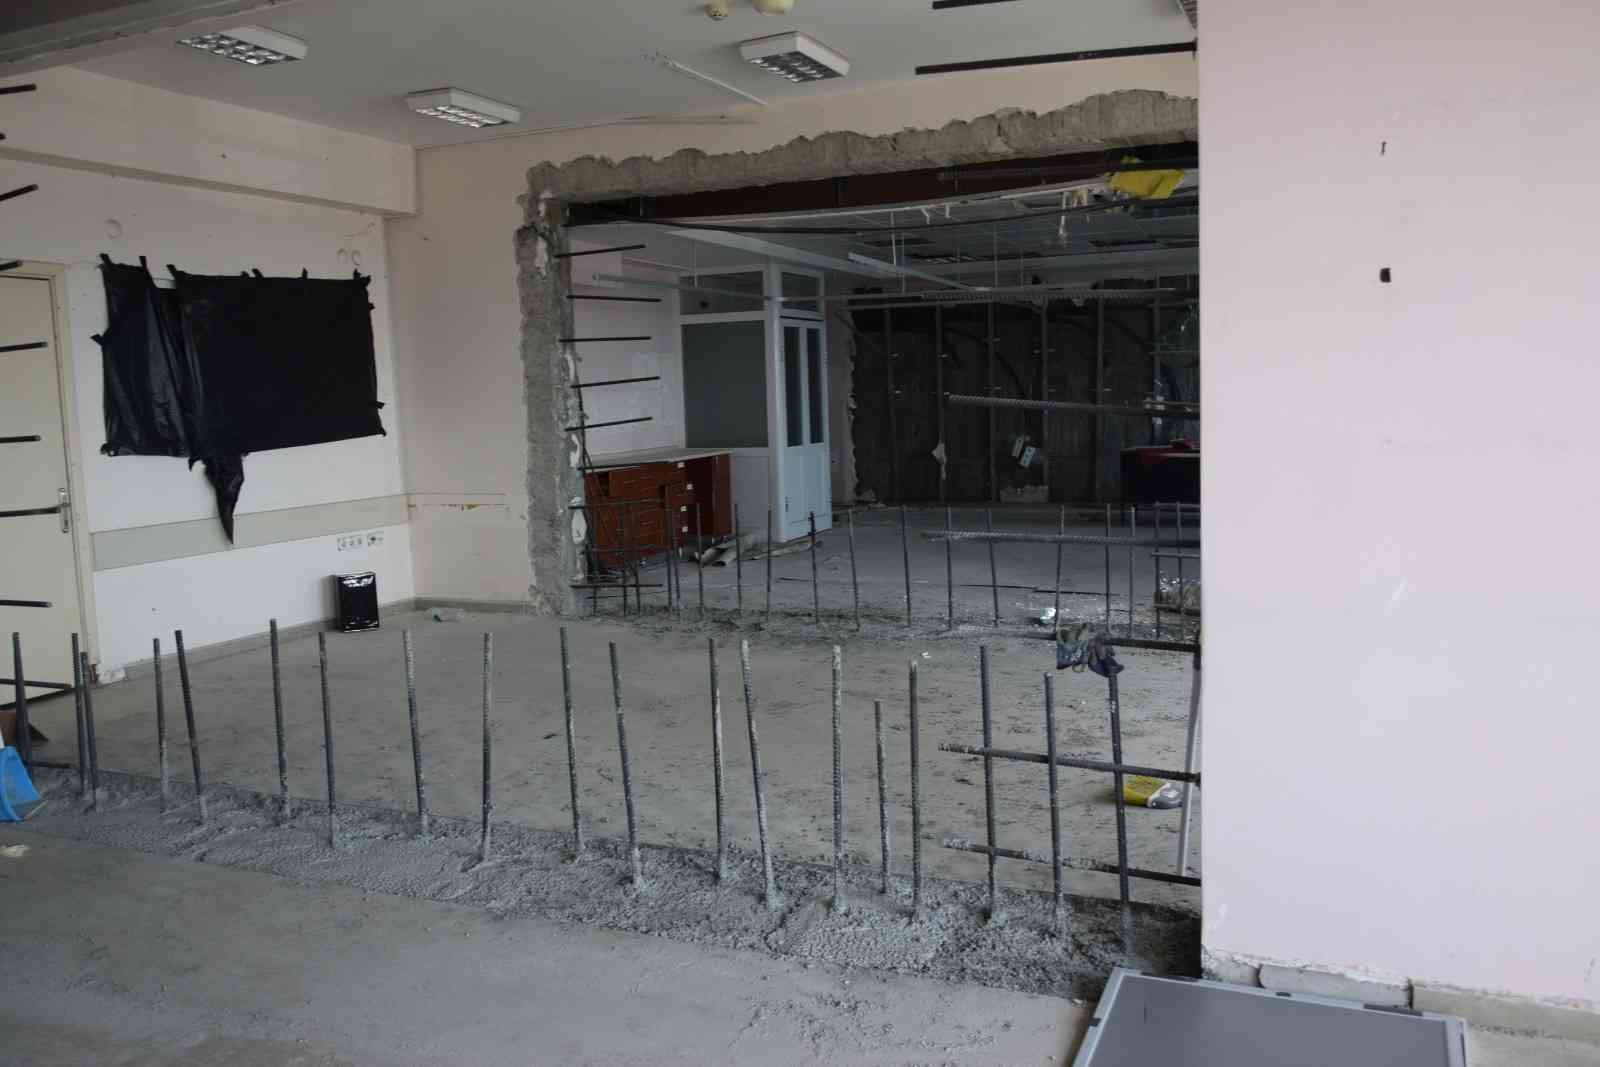 Düzce Üniversitesi Hastanesinde büyük onarım başladı #duzce